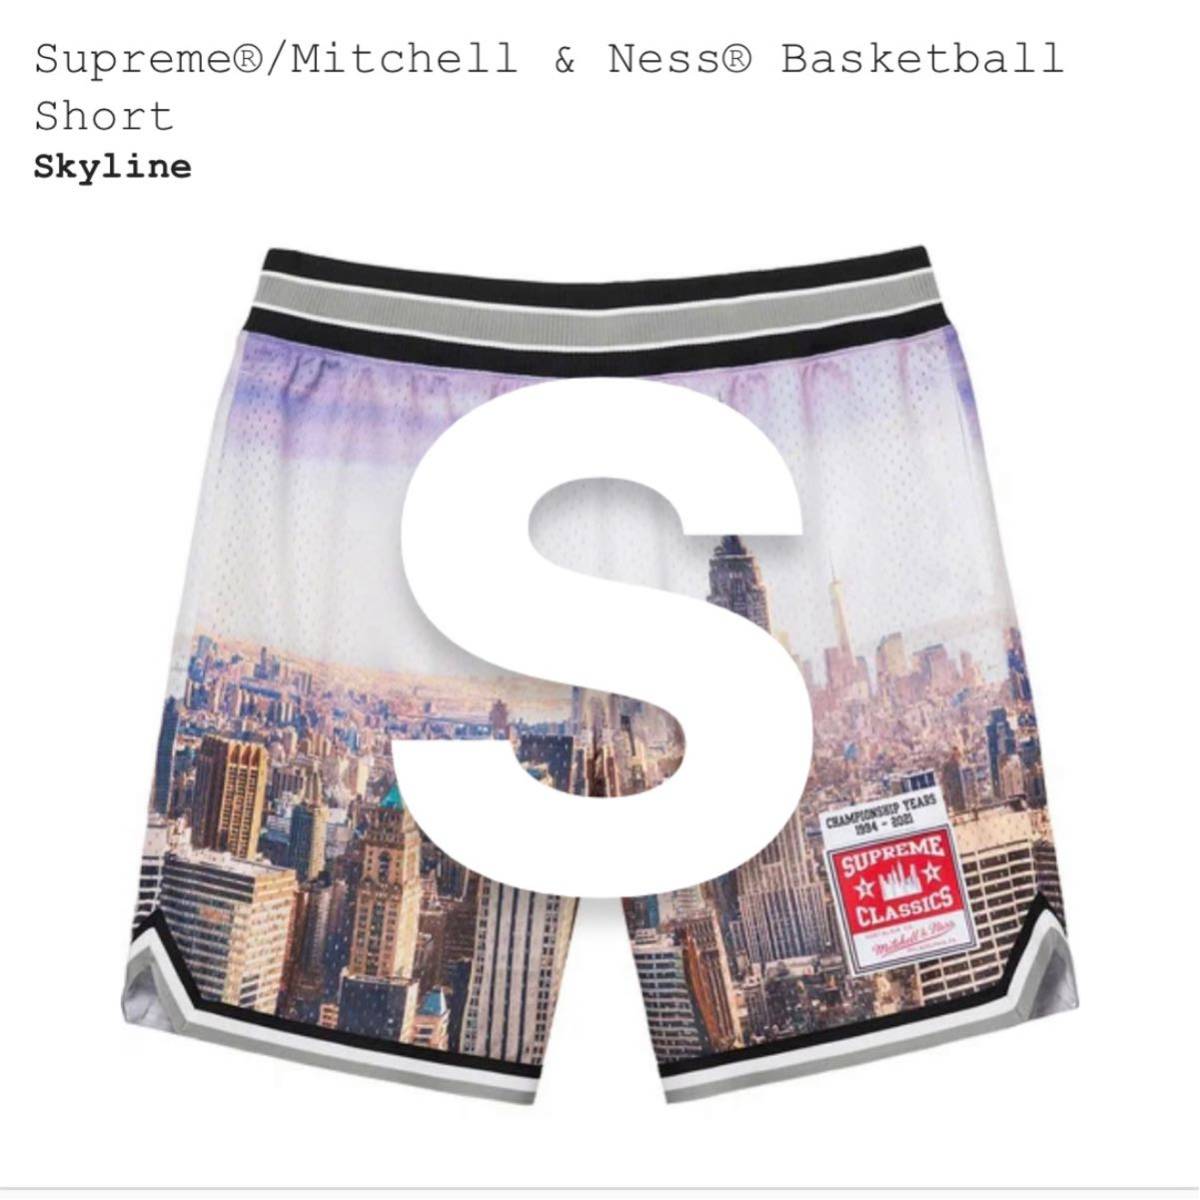 【新品未使用】Supreme Mitchell & Ness Basketball Short シュプリーム バスケットパンツ ショーツ バスパン 短パン 21ss ショーパン